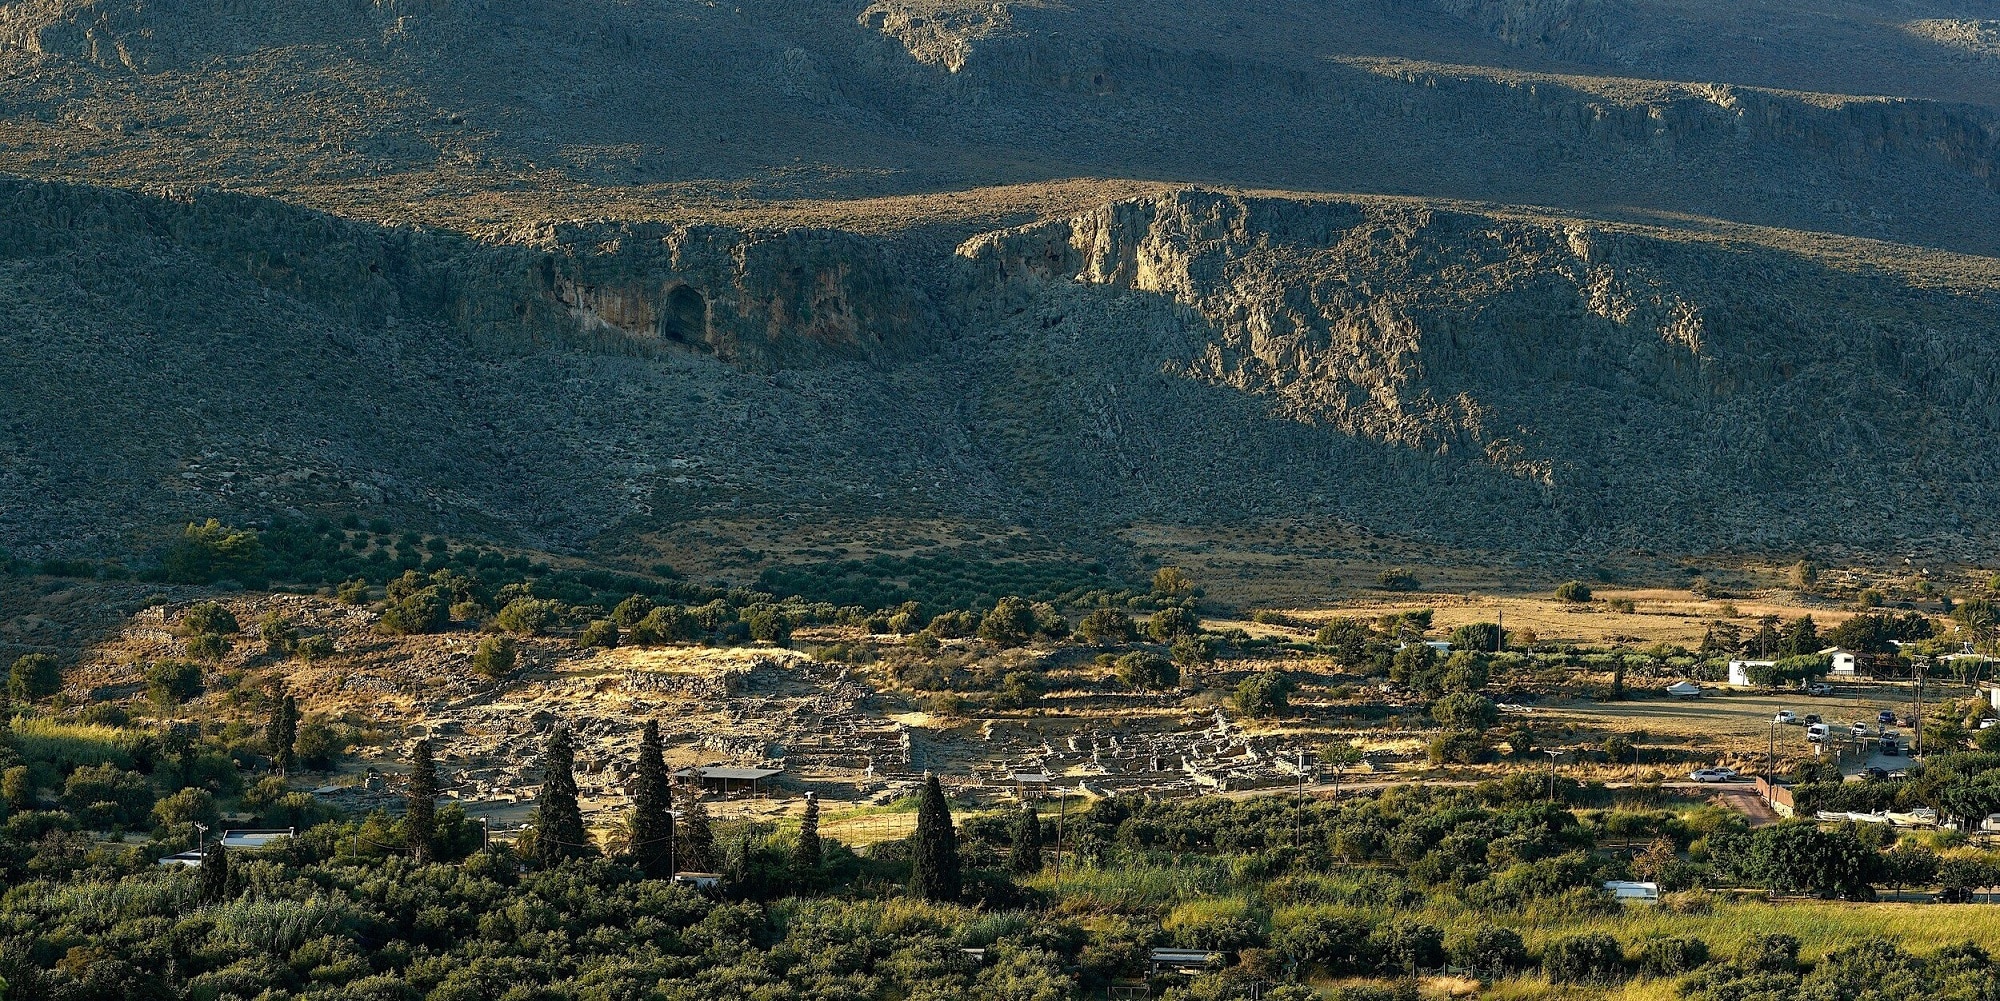 Η Ζάκρος είναι ένας μικρός όρμος στην Ανατολική Κρήτη